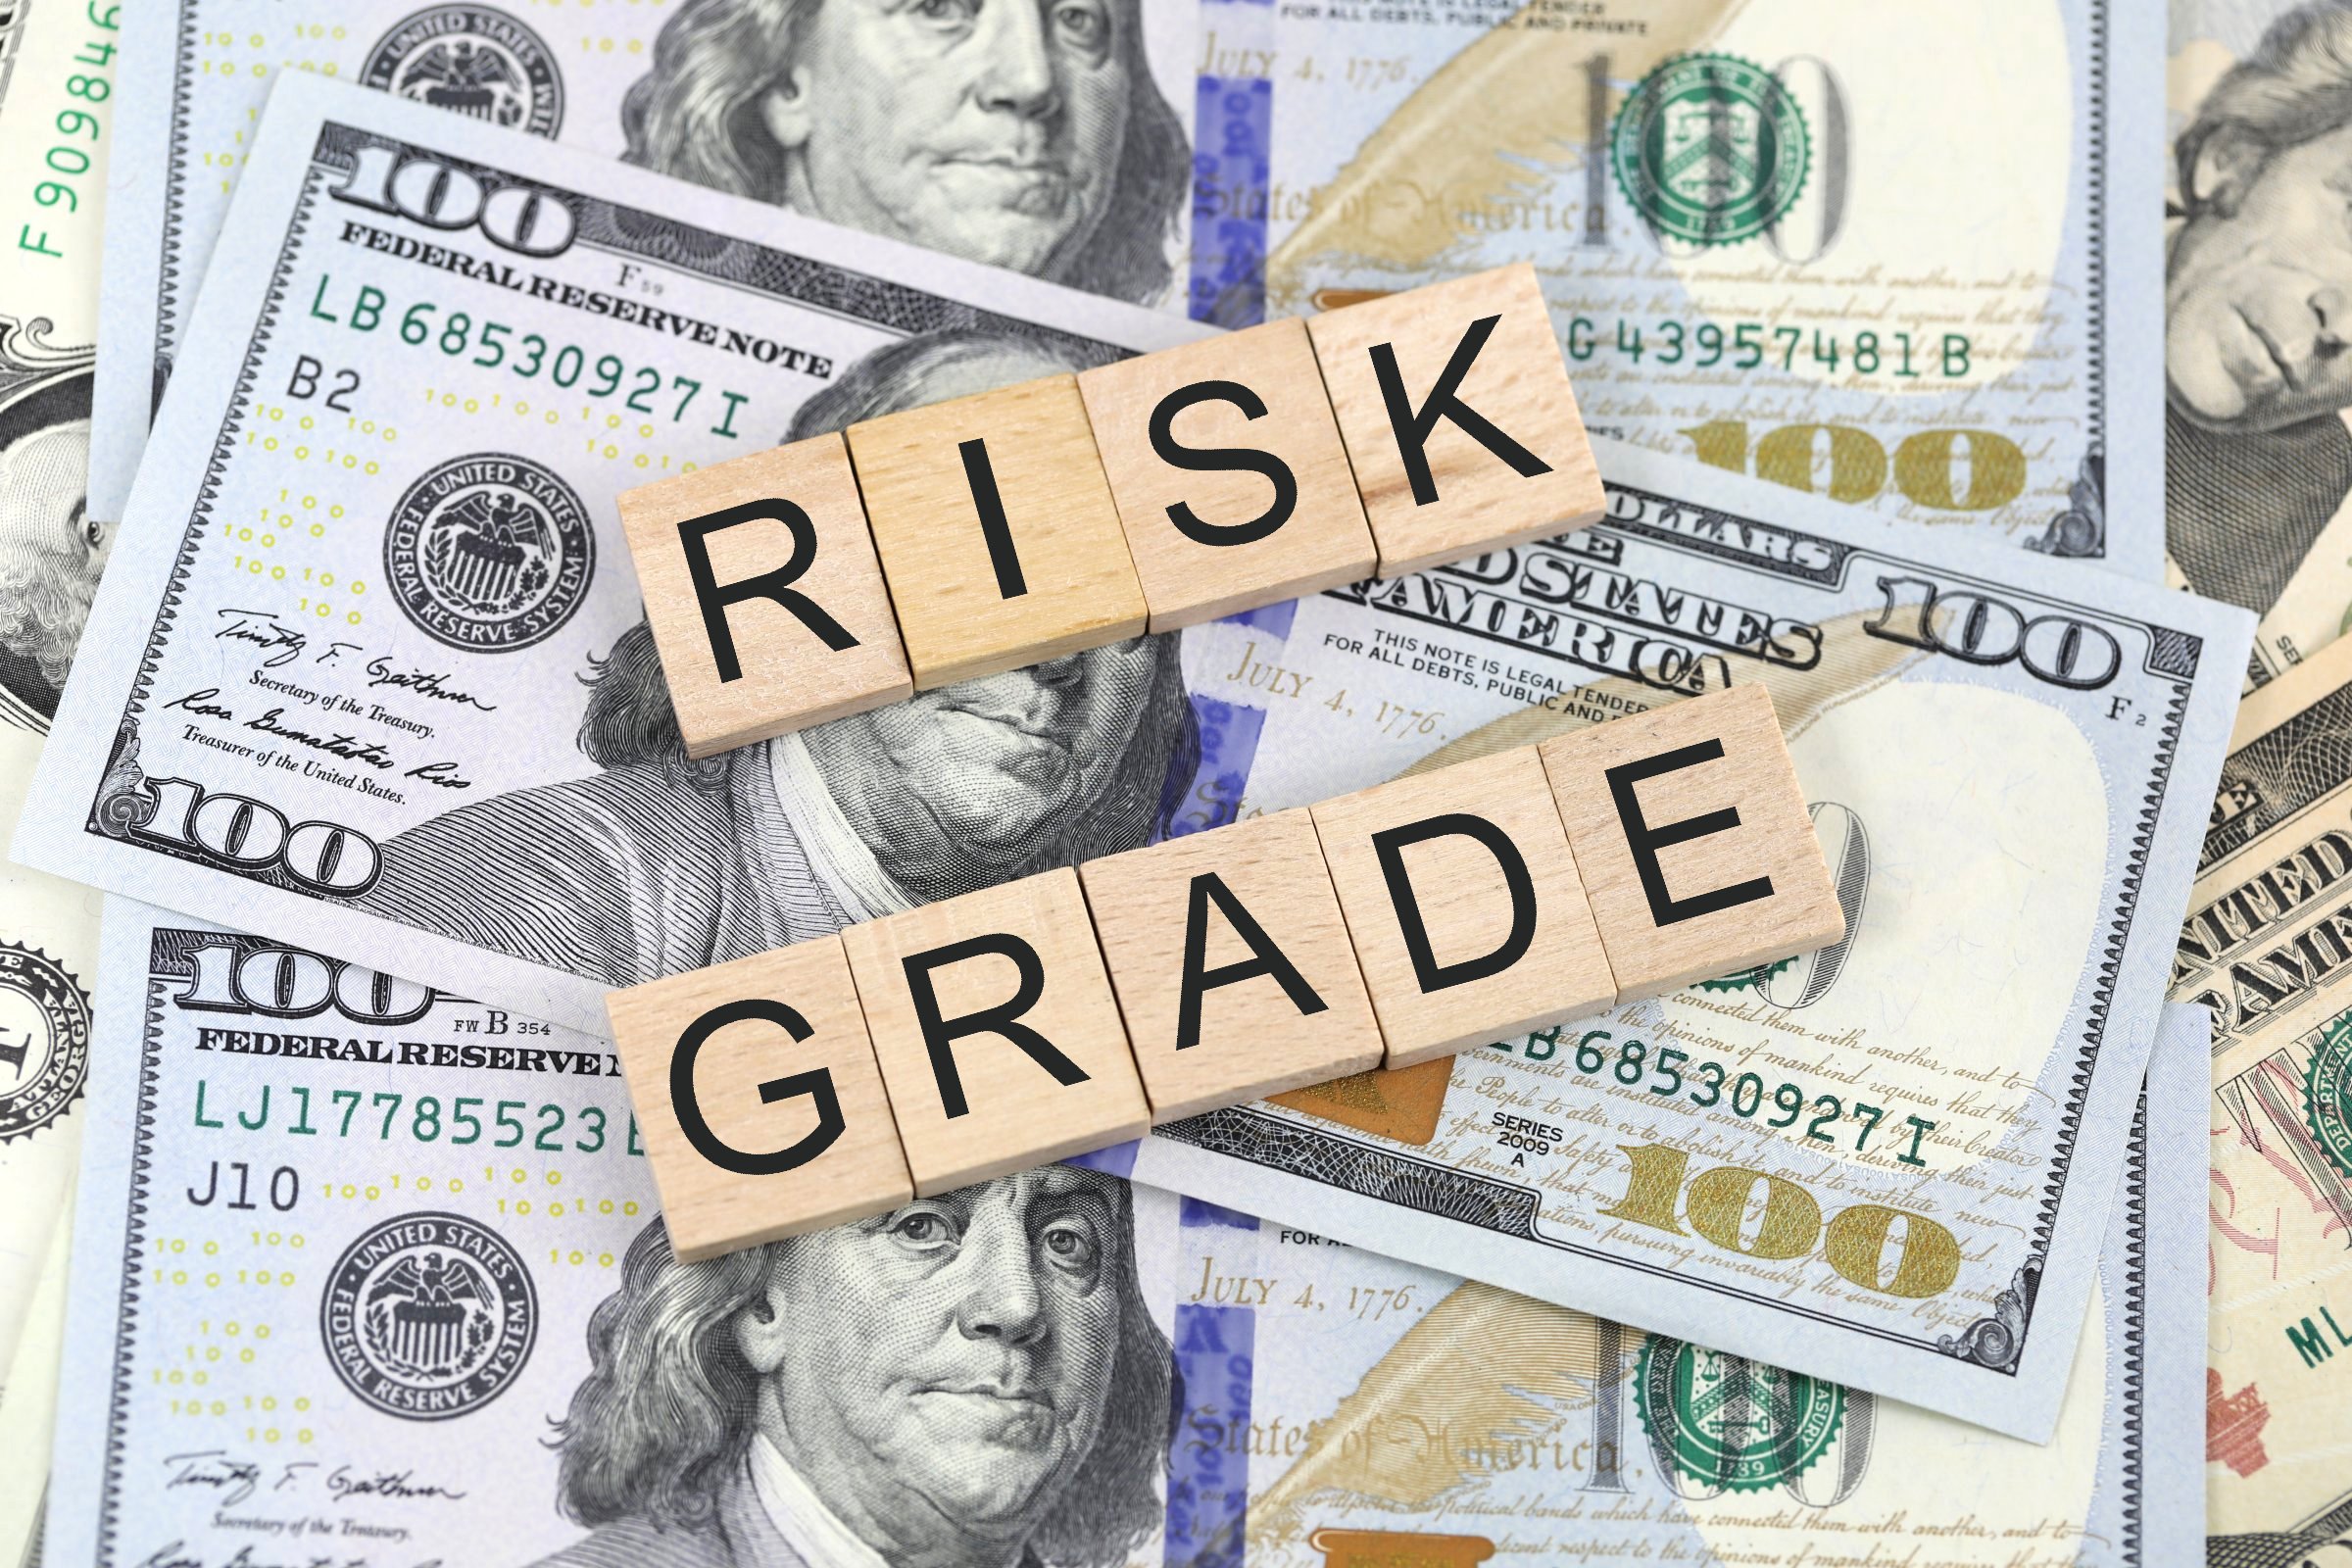 risk grade